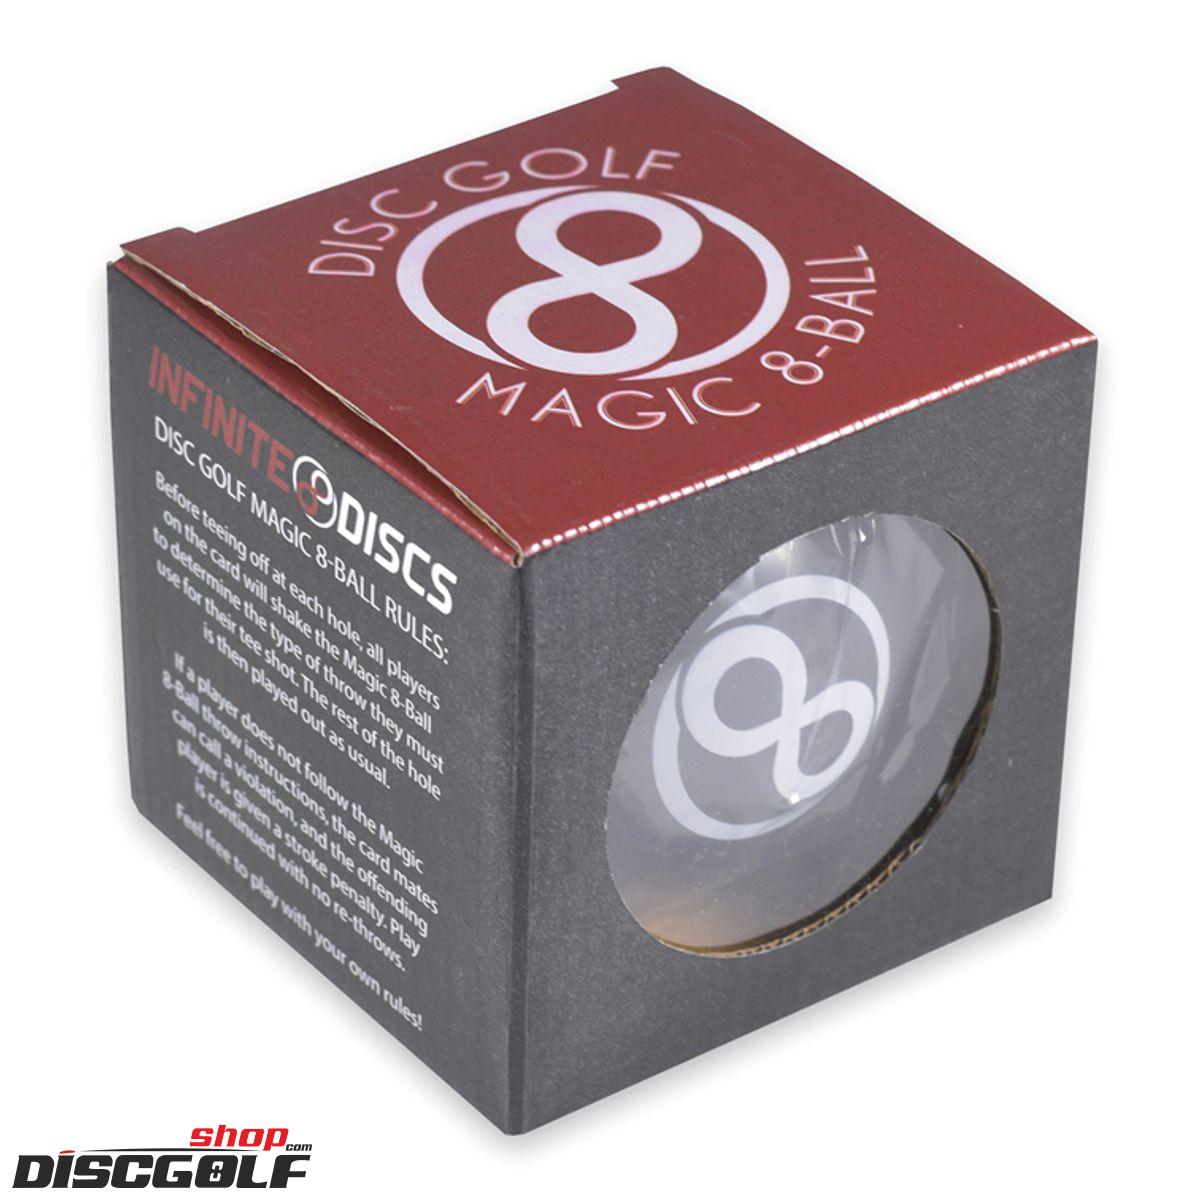 Infinite Discs Magic 8 Ball Game